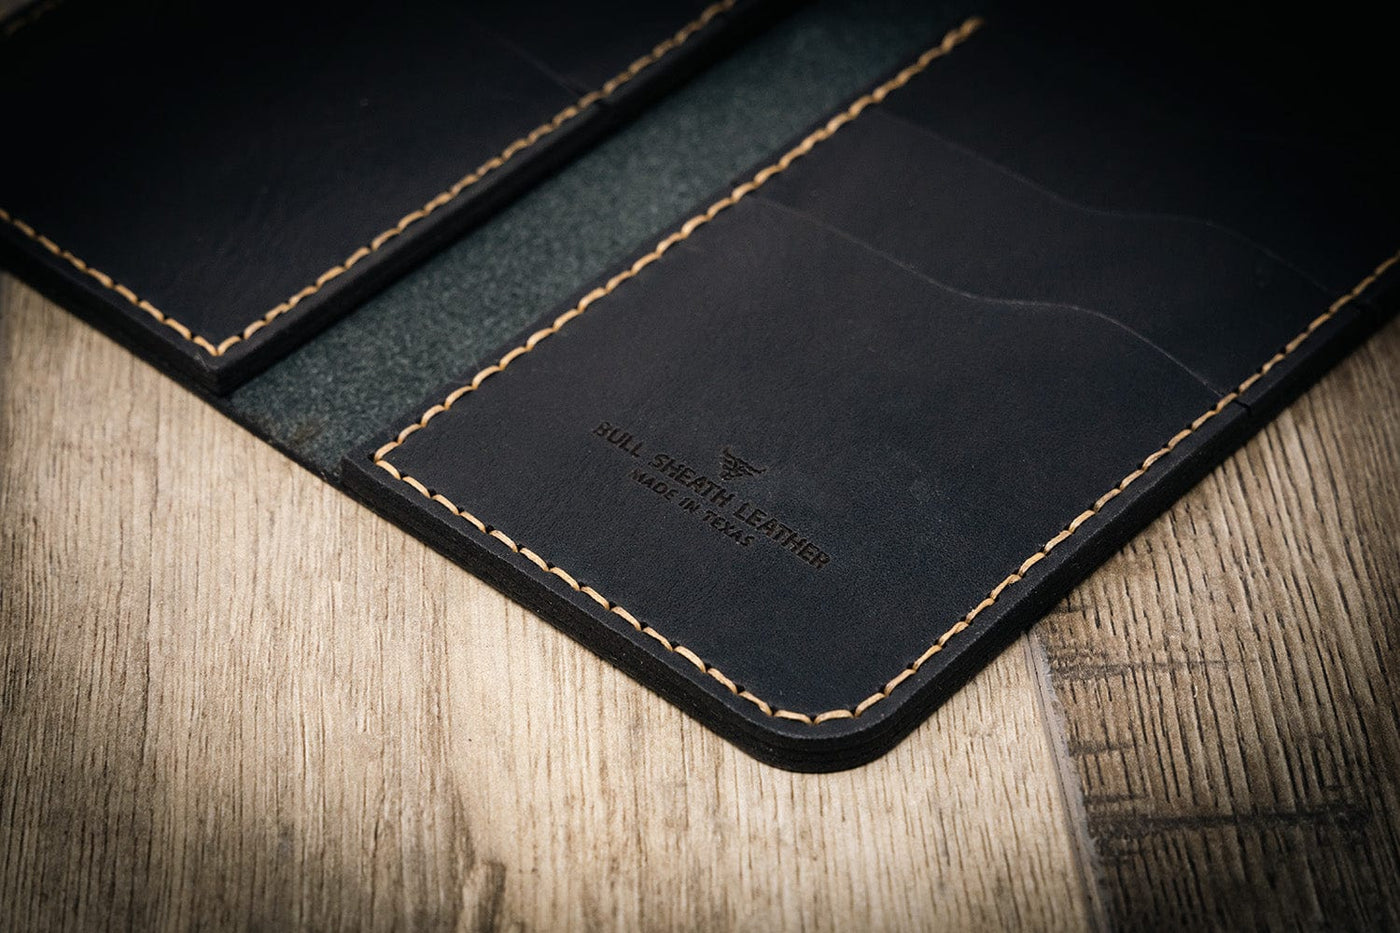 Long Wallet - The Houstonian - Brandy – Bull Sheath Leather